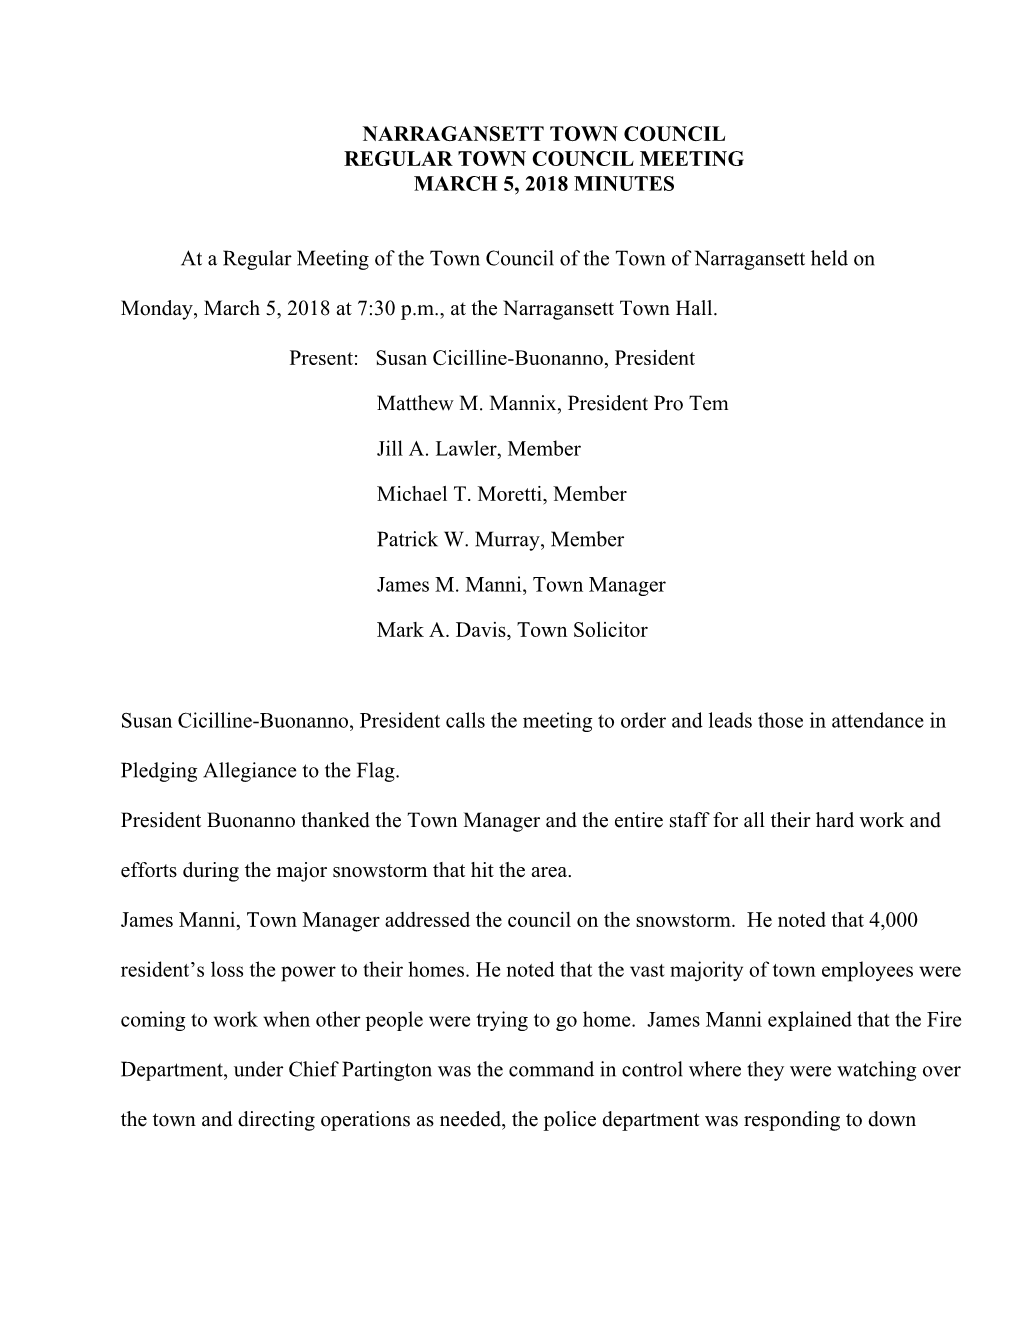 Narragansett Town Council Regular Town Council Meeting March 5, 2018 Minutes